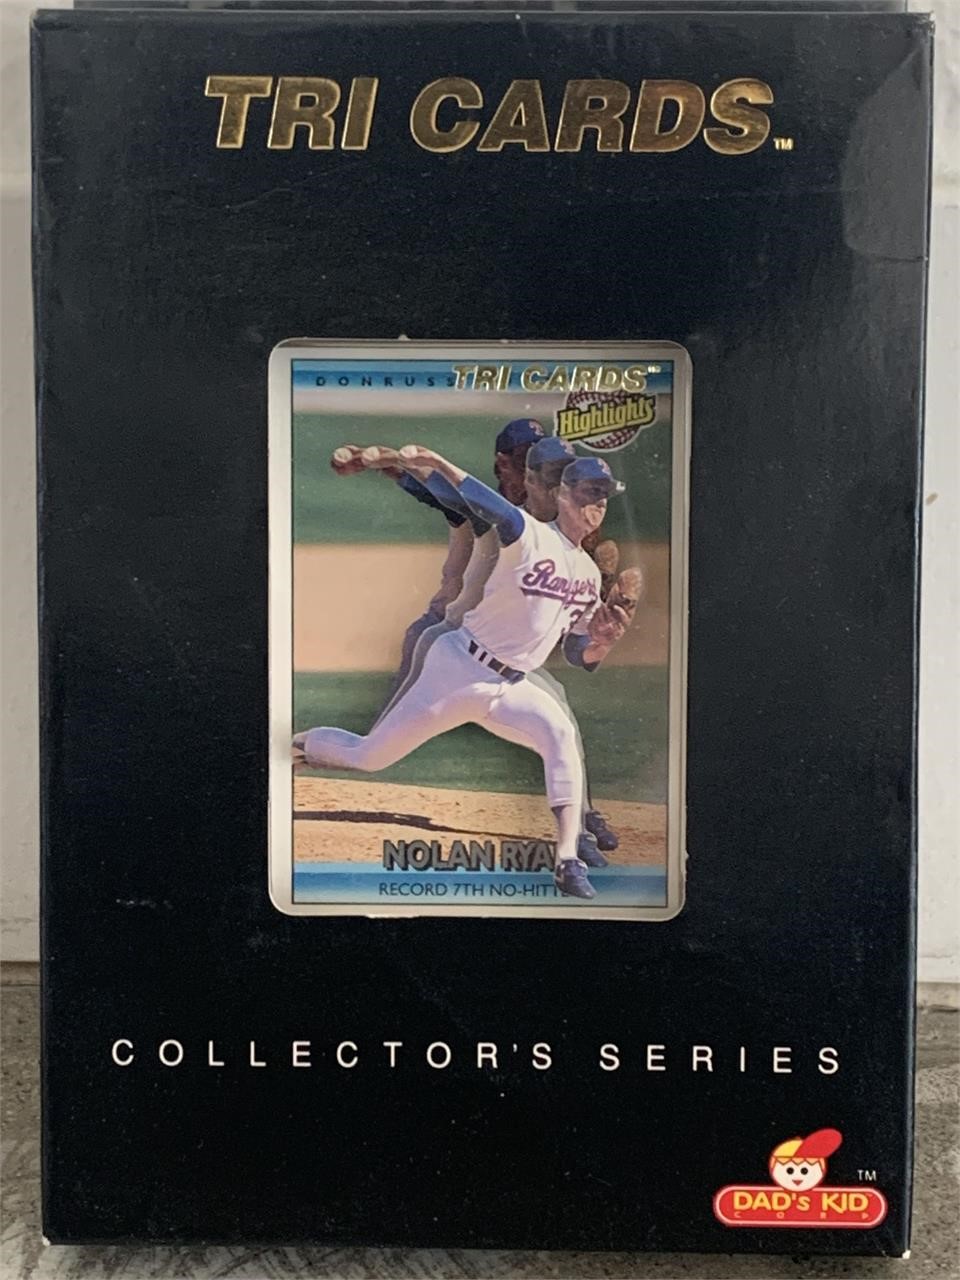 Nolan Ryan Collector's Series baseball card